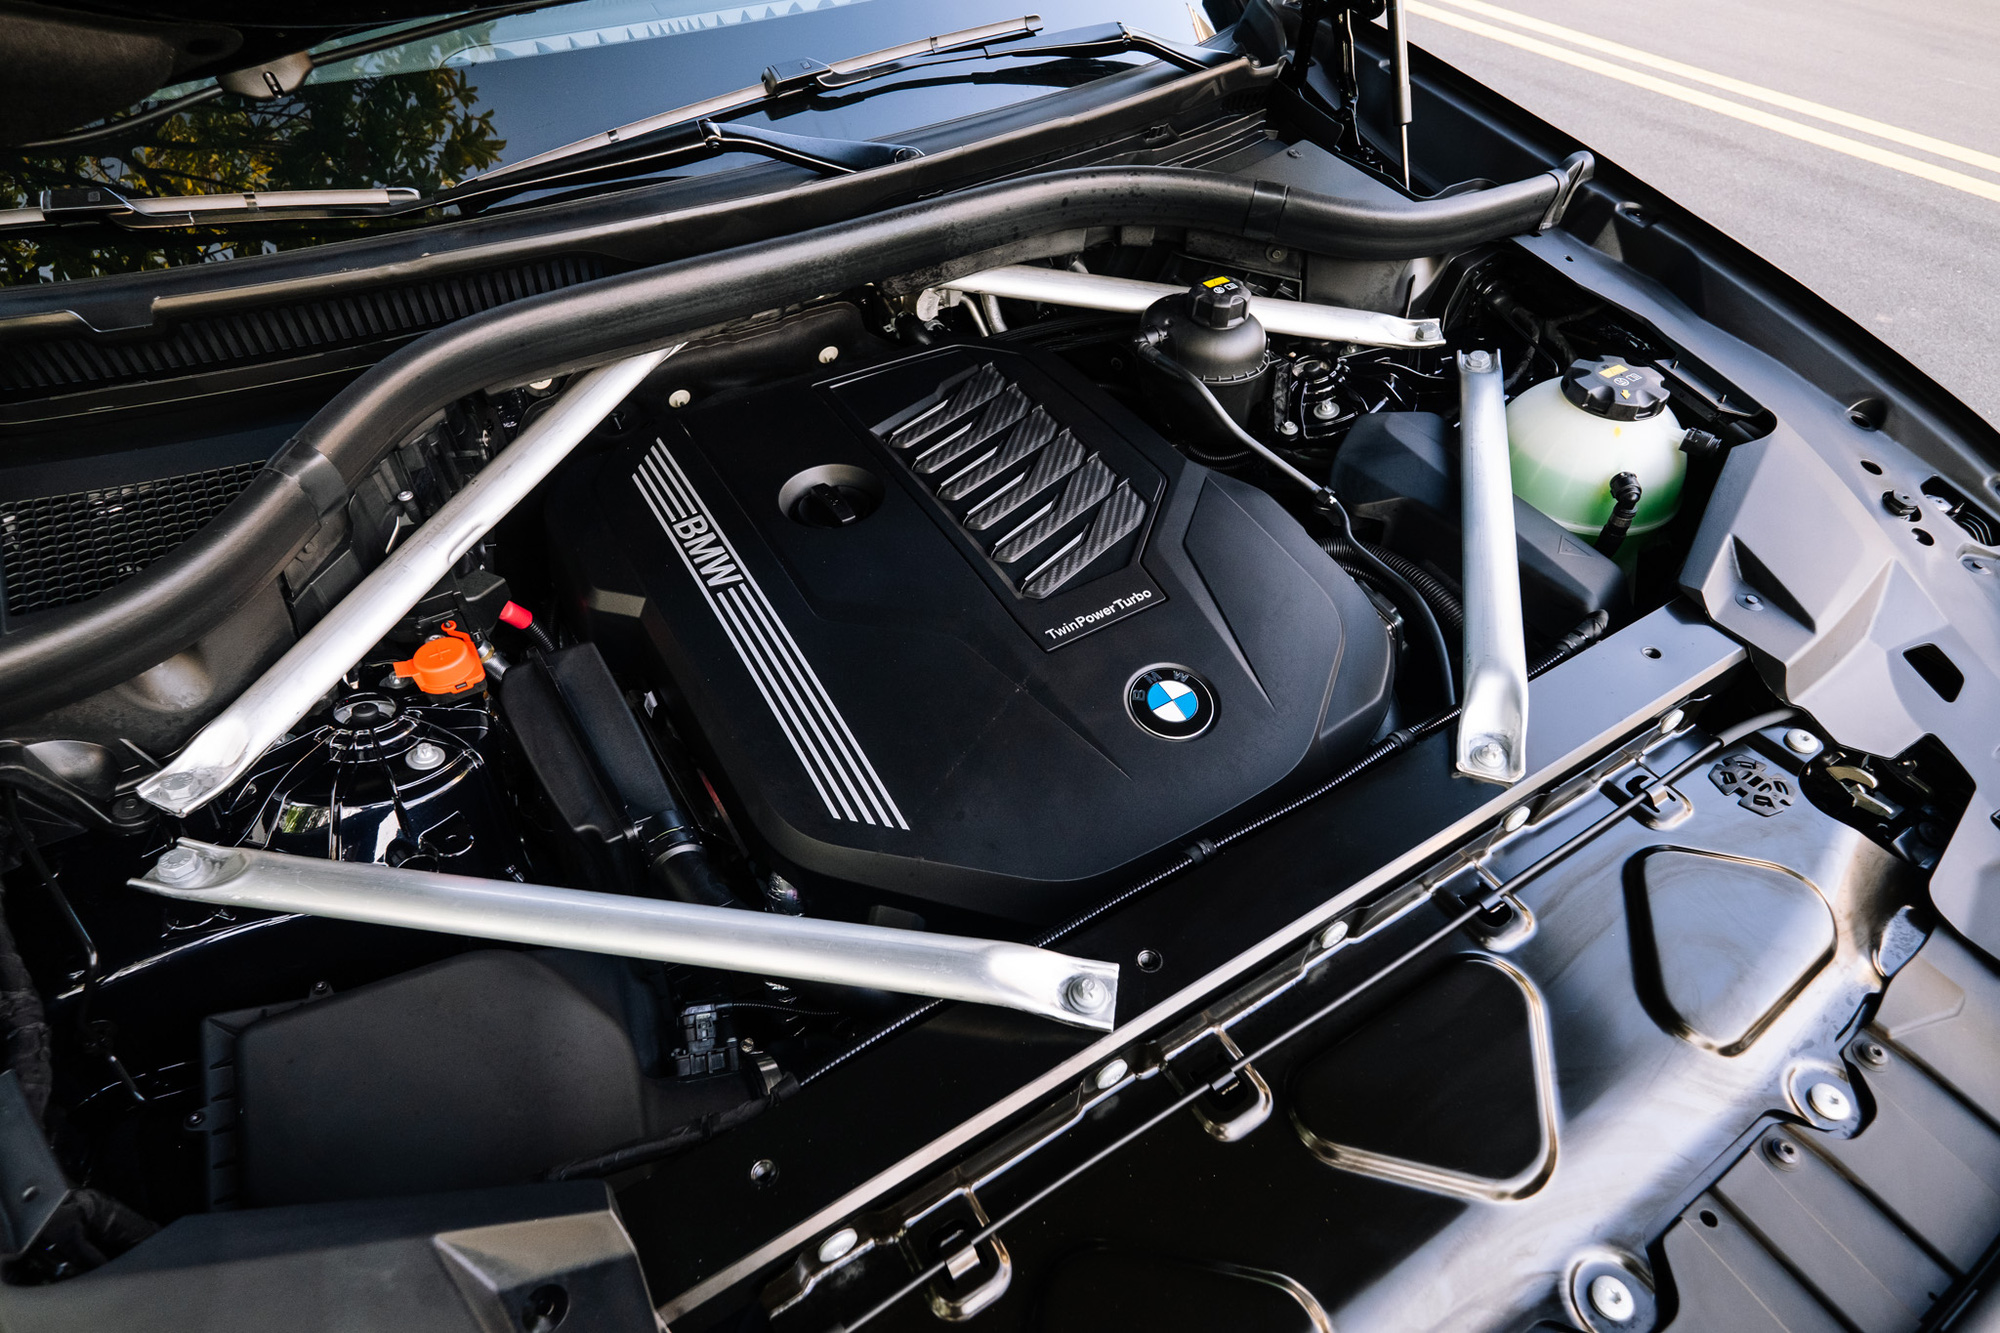 Xe chơi BMW X6 2020 giá hơn 4,8 tỷ đồng tại Việt Nam: Cao hơn đời cũ gần 1 tỷ đồng, tham vọng đối đầu Mercedes GLE Coupe - Ảnh 3.